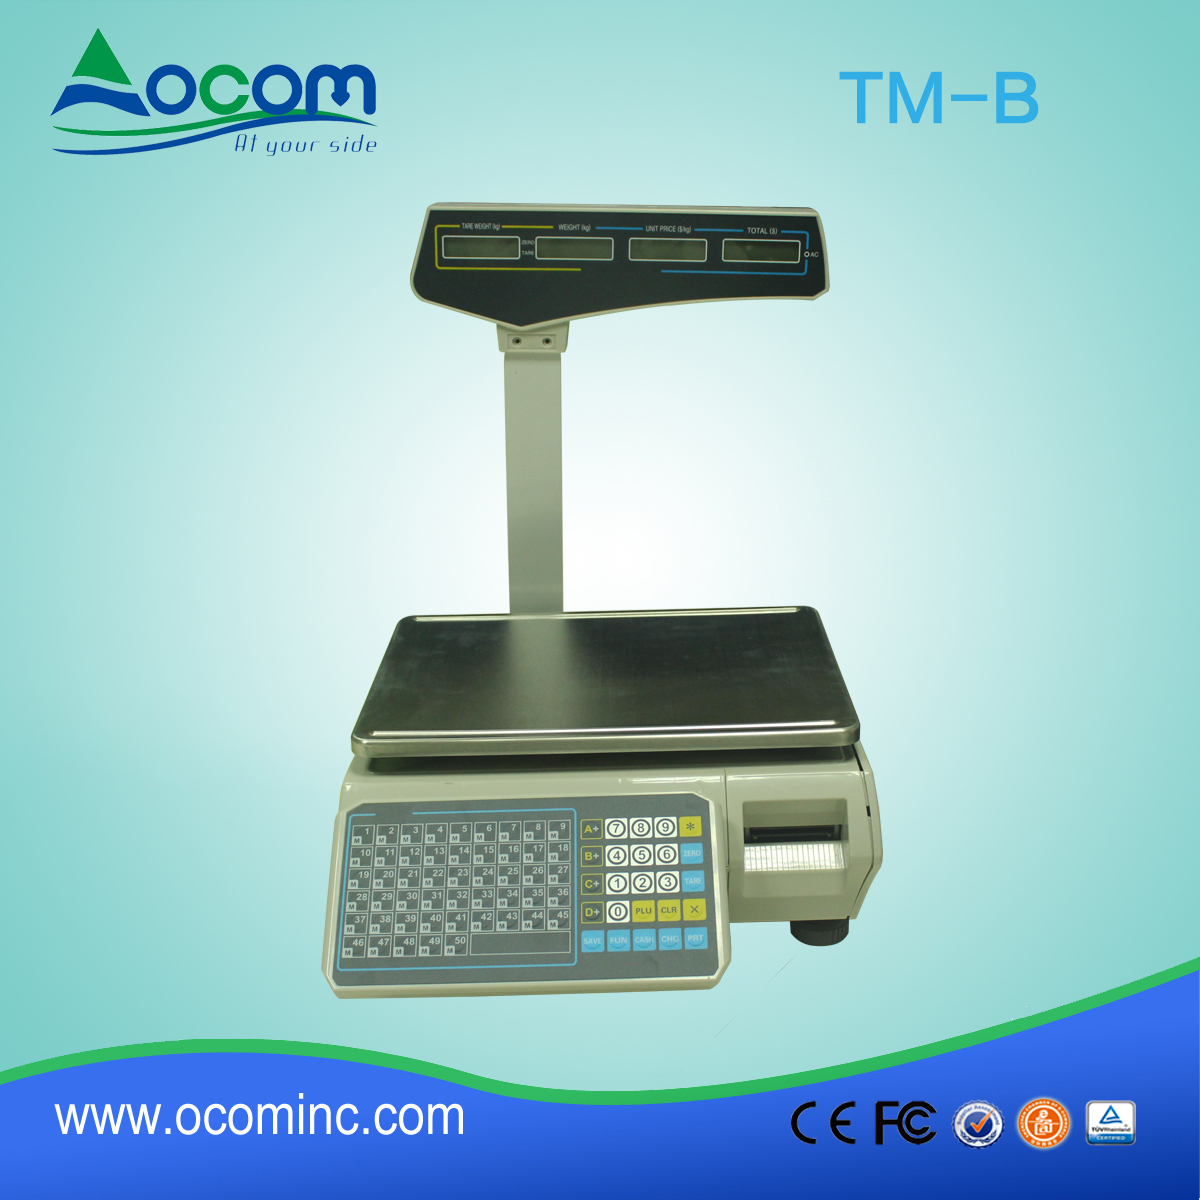 TM-b 30 kg balance électronique avec imprimante et interface LAN